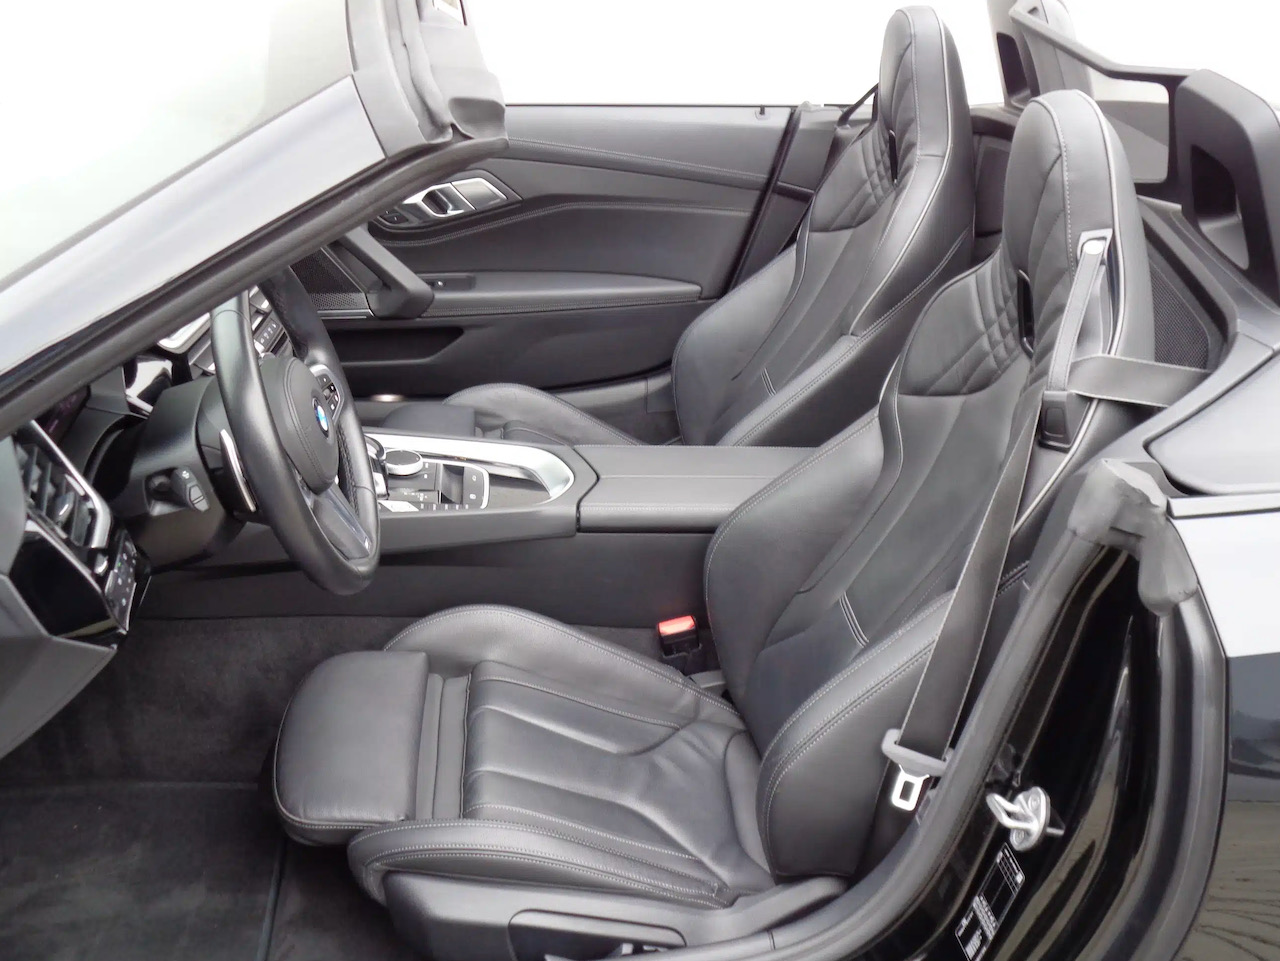 BMW Z4 M40i | předváděcí auto skladem | roadster | V6 benzin 340 koní | skvělá výbava | nákup online | super cena  |  AUTOiBUY.com